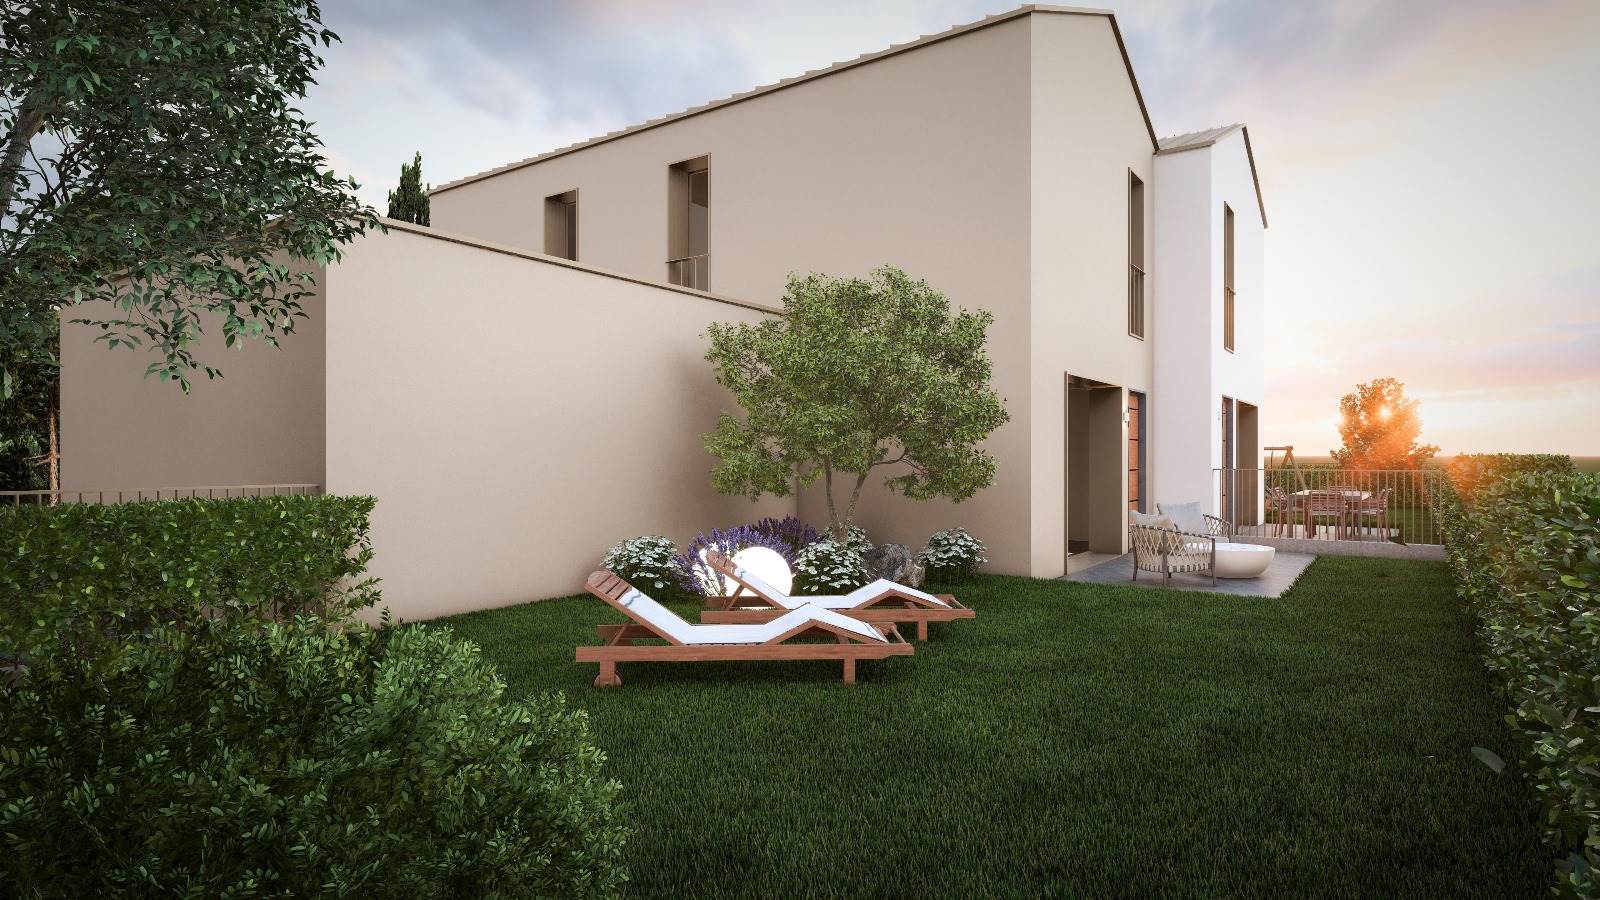 Villa Bifamiliare in vendita a Schio, 7 locali, prezzo € 315.000 | PortaleAgenzieImmobiliari.it